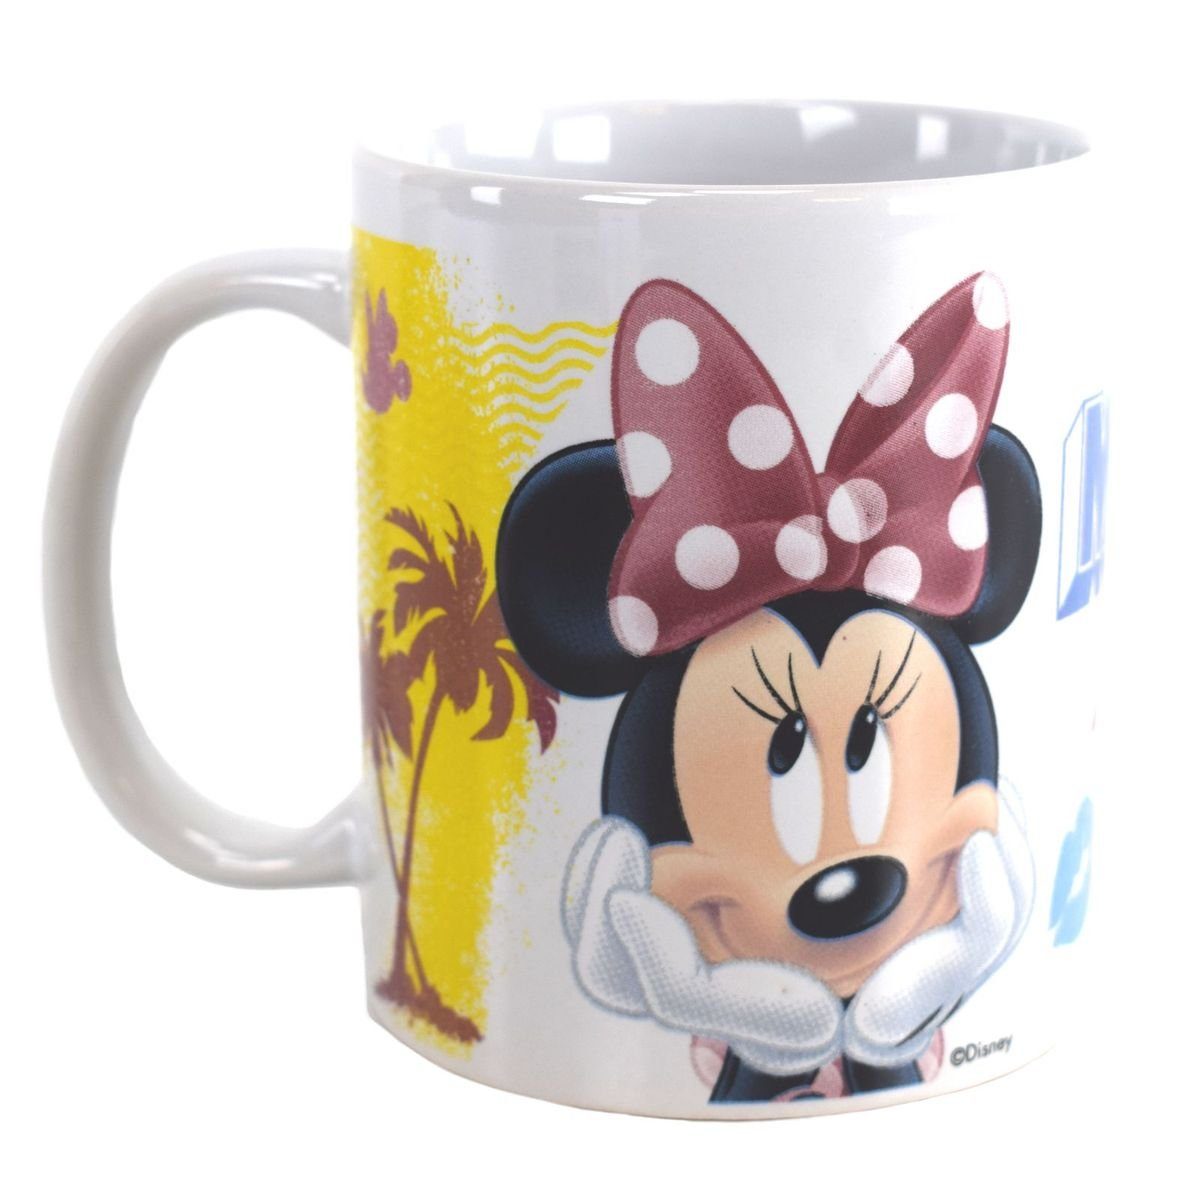 Stor Tasse Tasse mit Minnie Mouse Motiv in Geschenkkarton ca. 325 ml Kindertasse, Keramik, authentisches Design